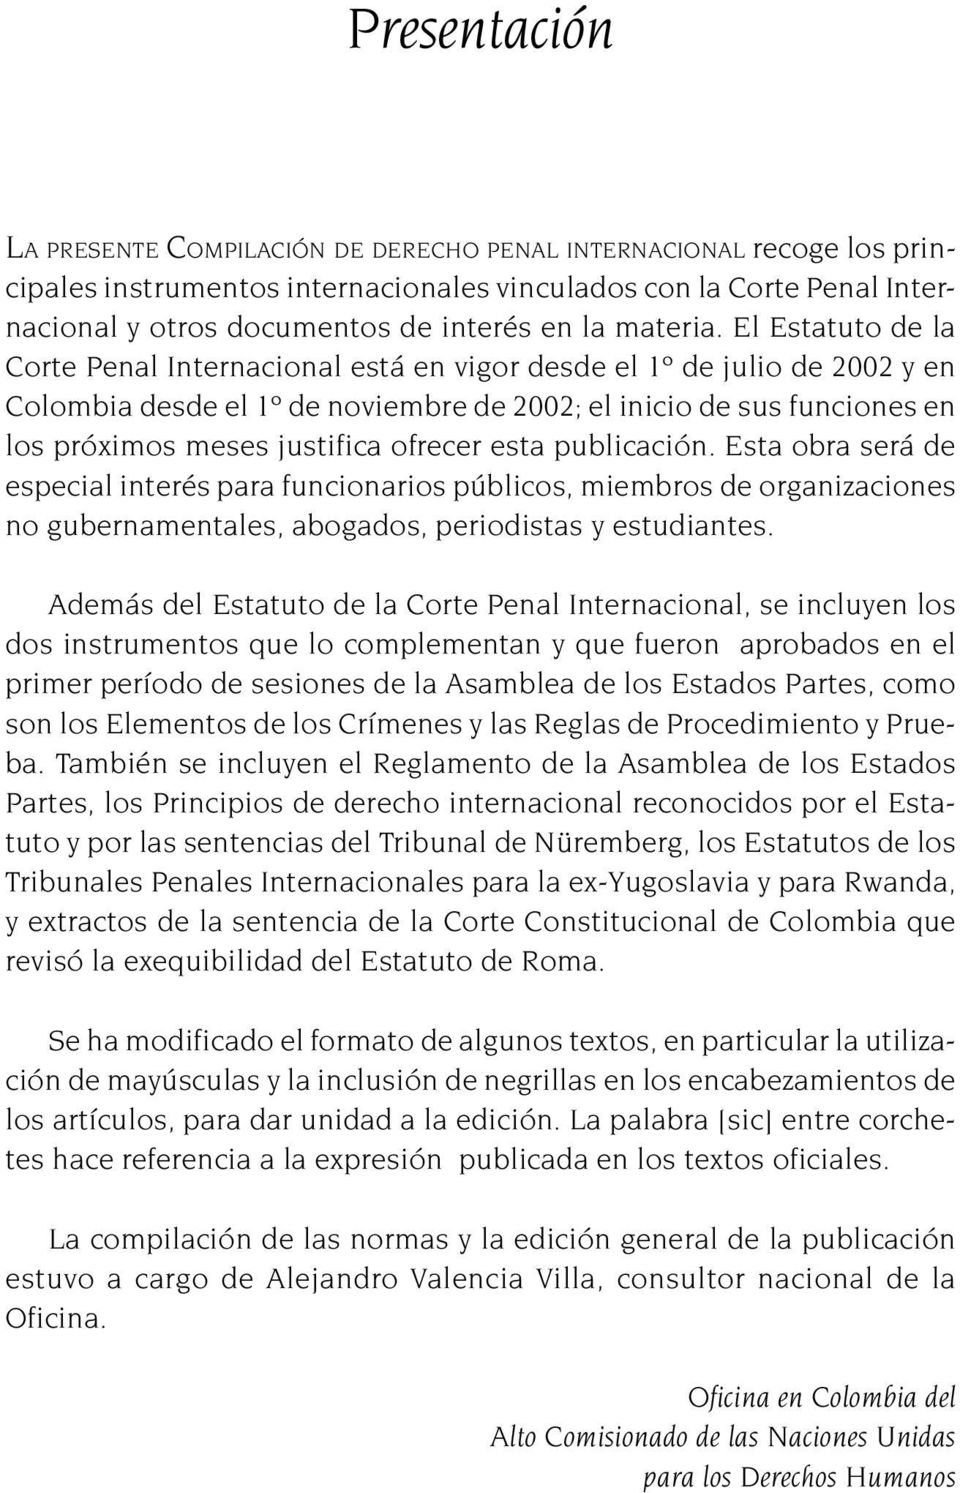 El Estatuto de la Corte Penal Internacional está en vigor desde el 1º de julio de 2002 y en Colombia desde el 1º de noviembre de 2002; el inicio de sus funciones en los próximos meses justifica